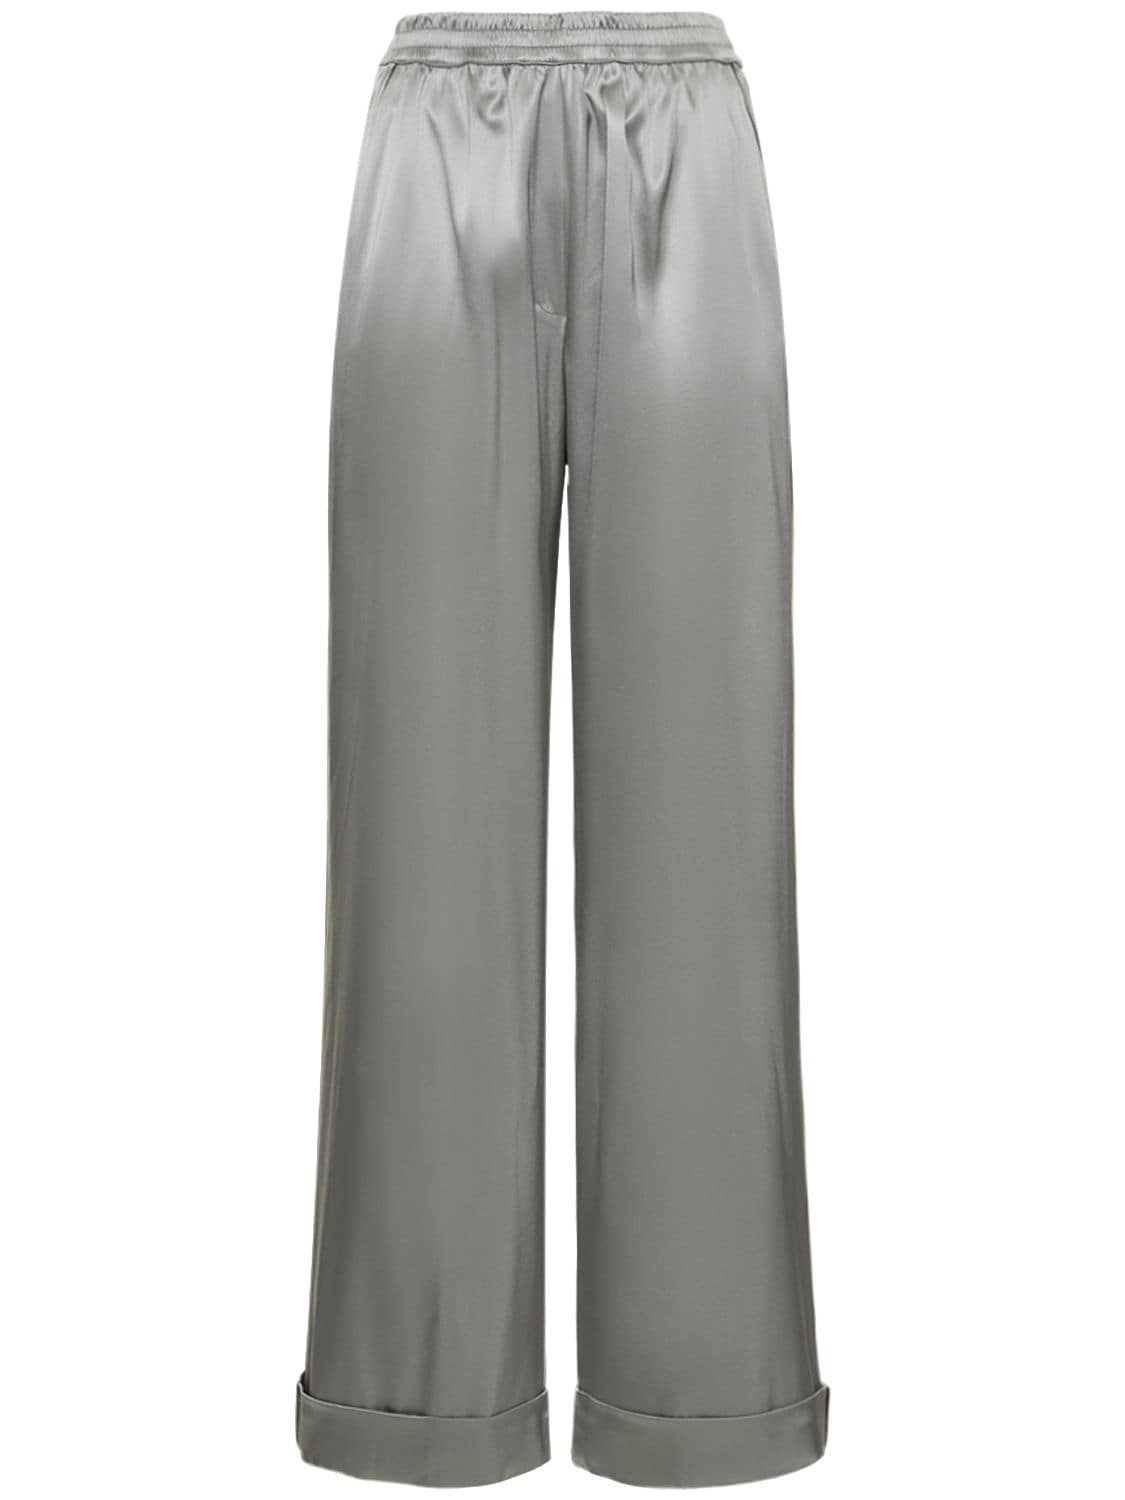 Image of Silk Satin Stretch Pajama Pants